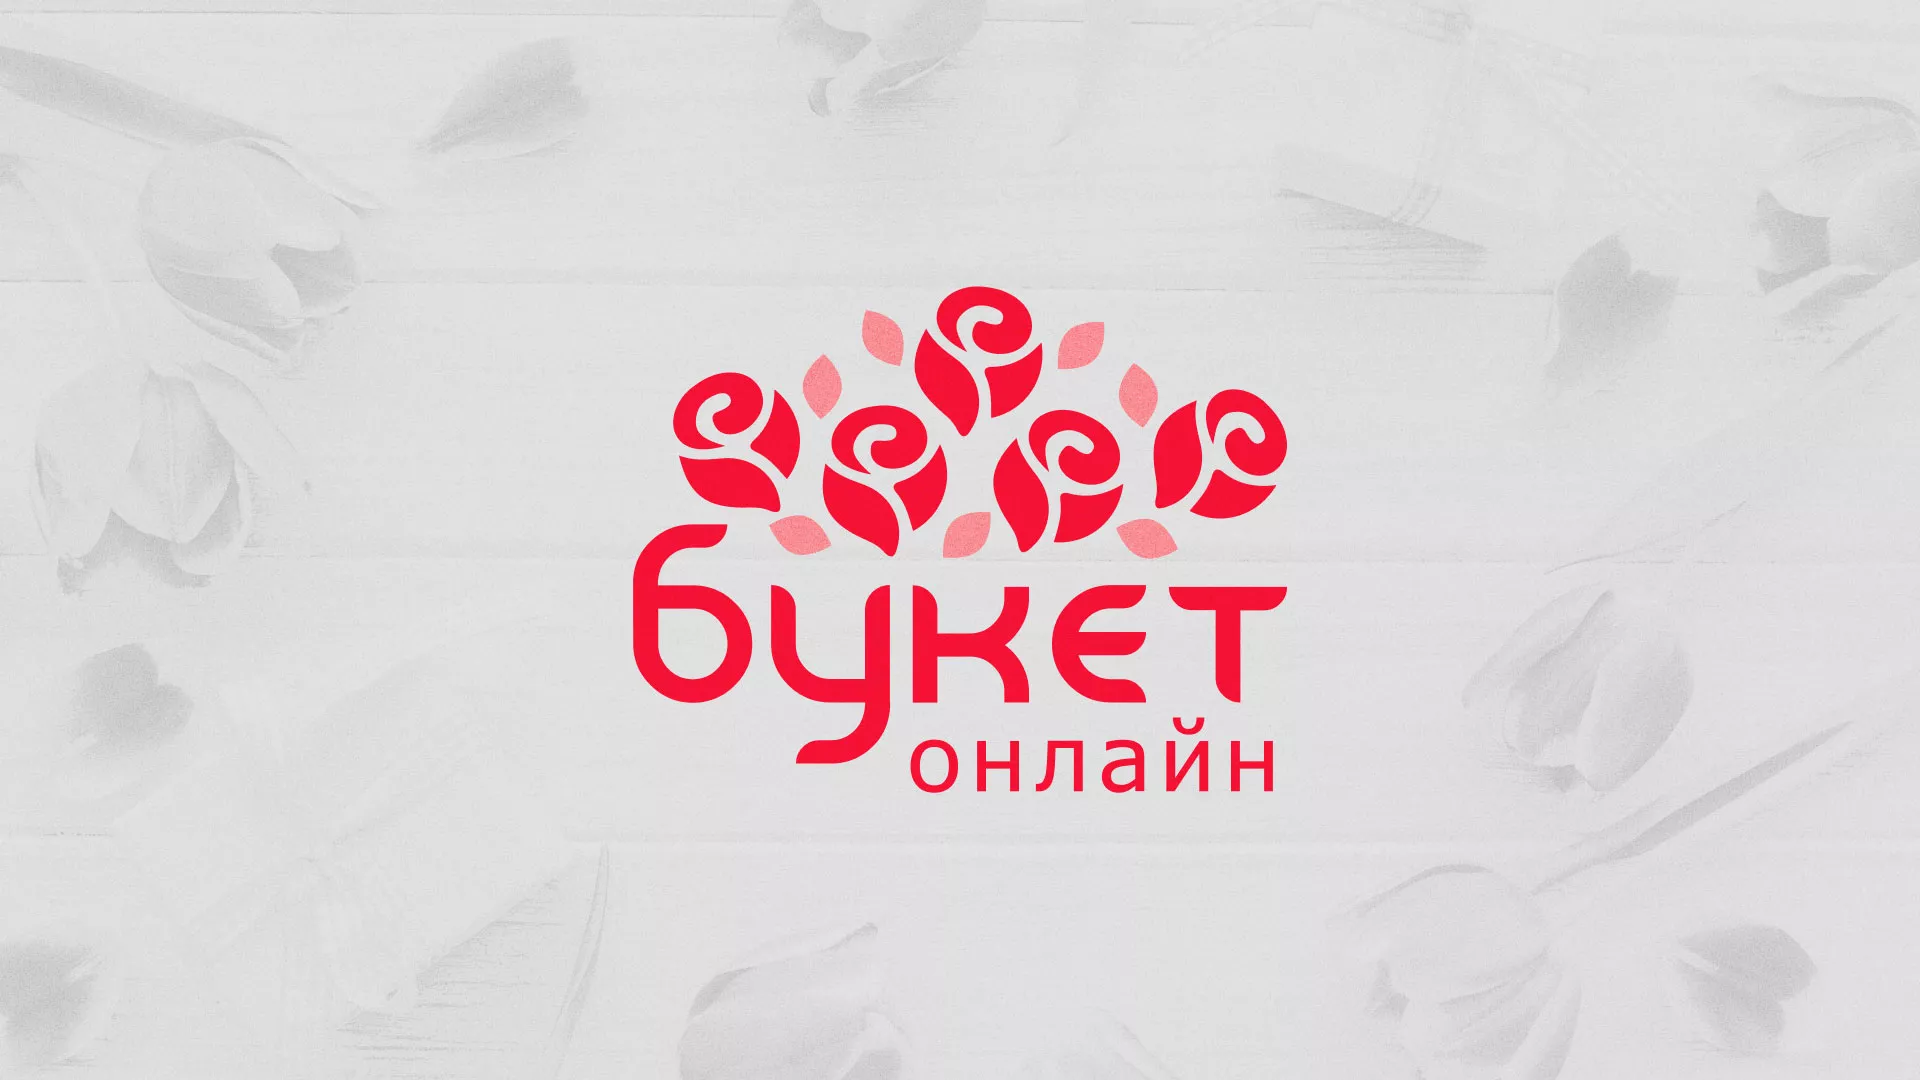 Создание интернет-магазина «Букет-онлайн» по цветам в Мариинске